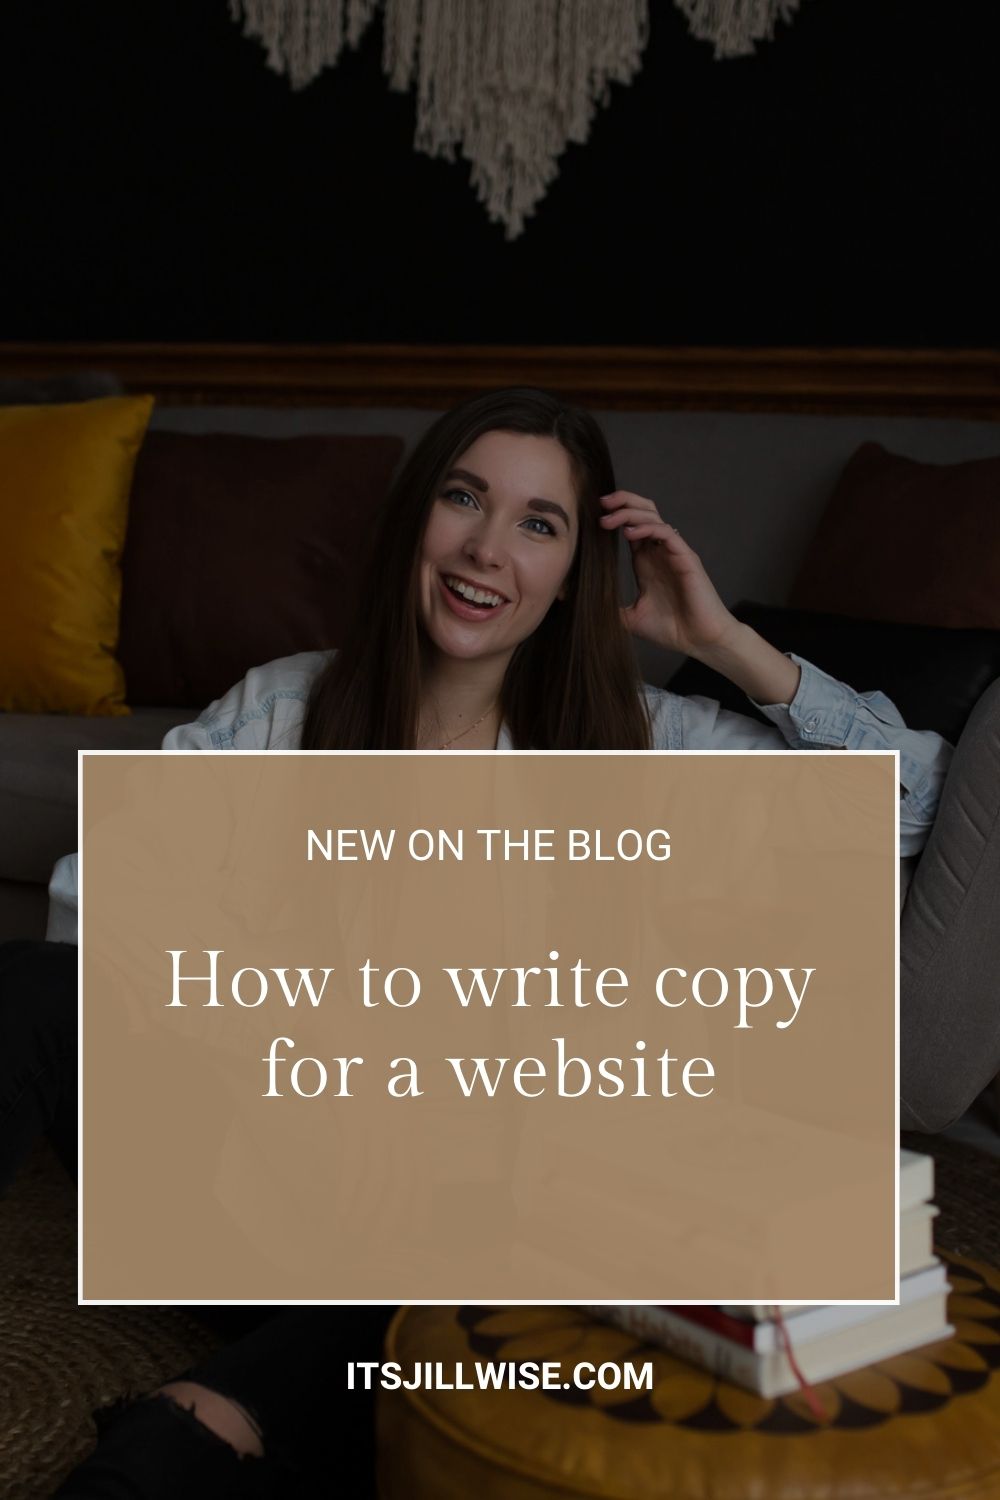 How to write copy for a website